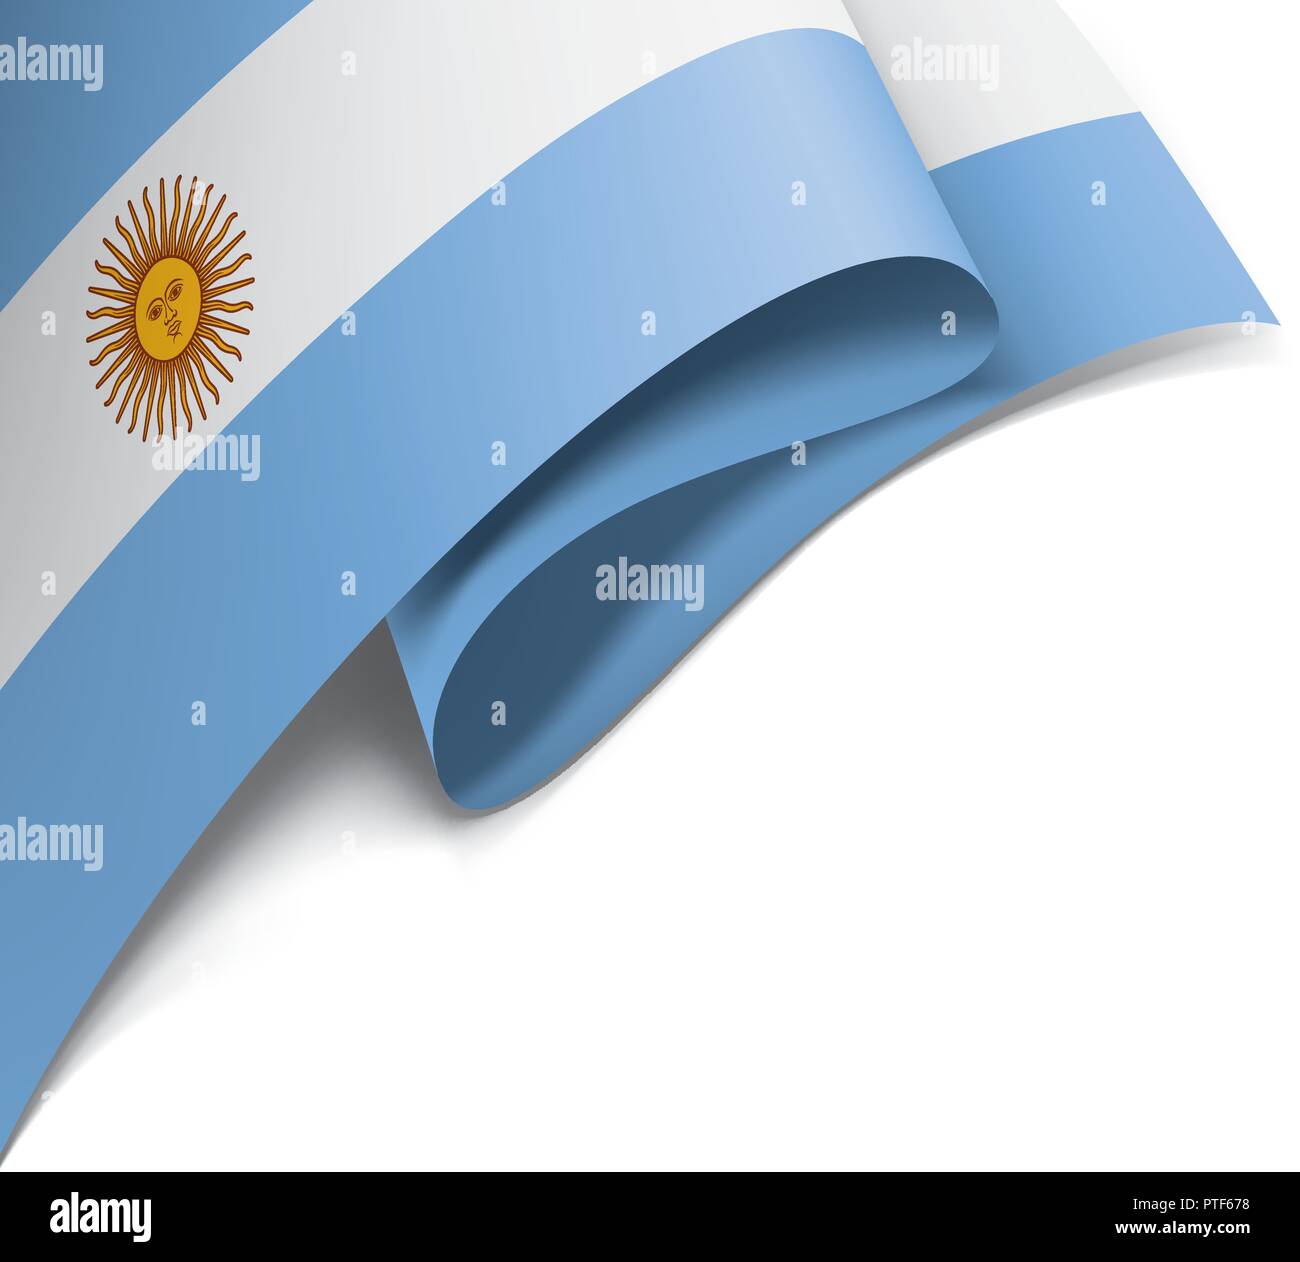 Argentina Bandera, ilustración vectorial sobre un fondo blanco Imagen  Vector de stock - Alamy